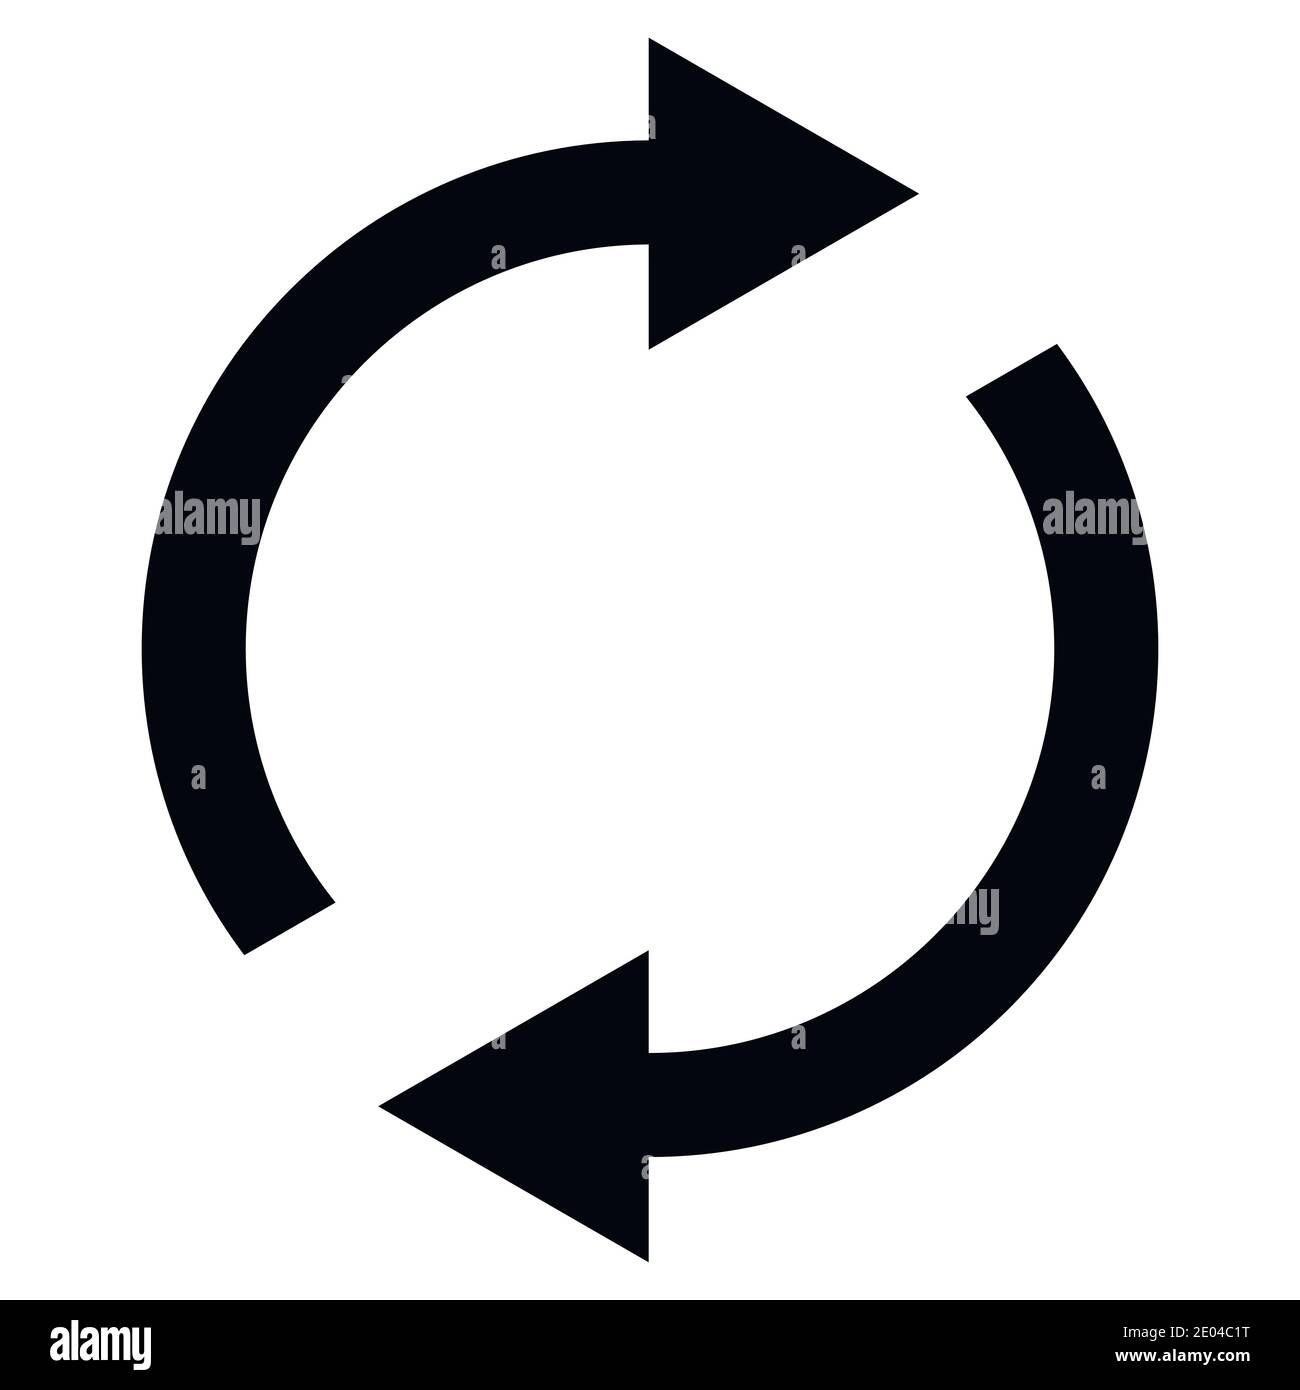 Symbolwechsel wird fortgesetzt, rotierende Pfeile im Kreis, Synchronisierung von Vektorsymbolen, Austausch von erneuerbaren Produkten, Erneuerung von Änderungen Stock Vektor